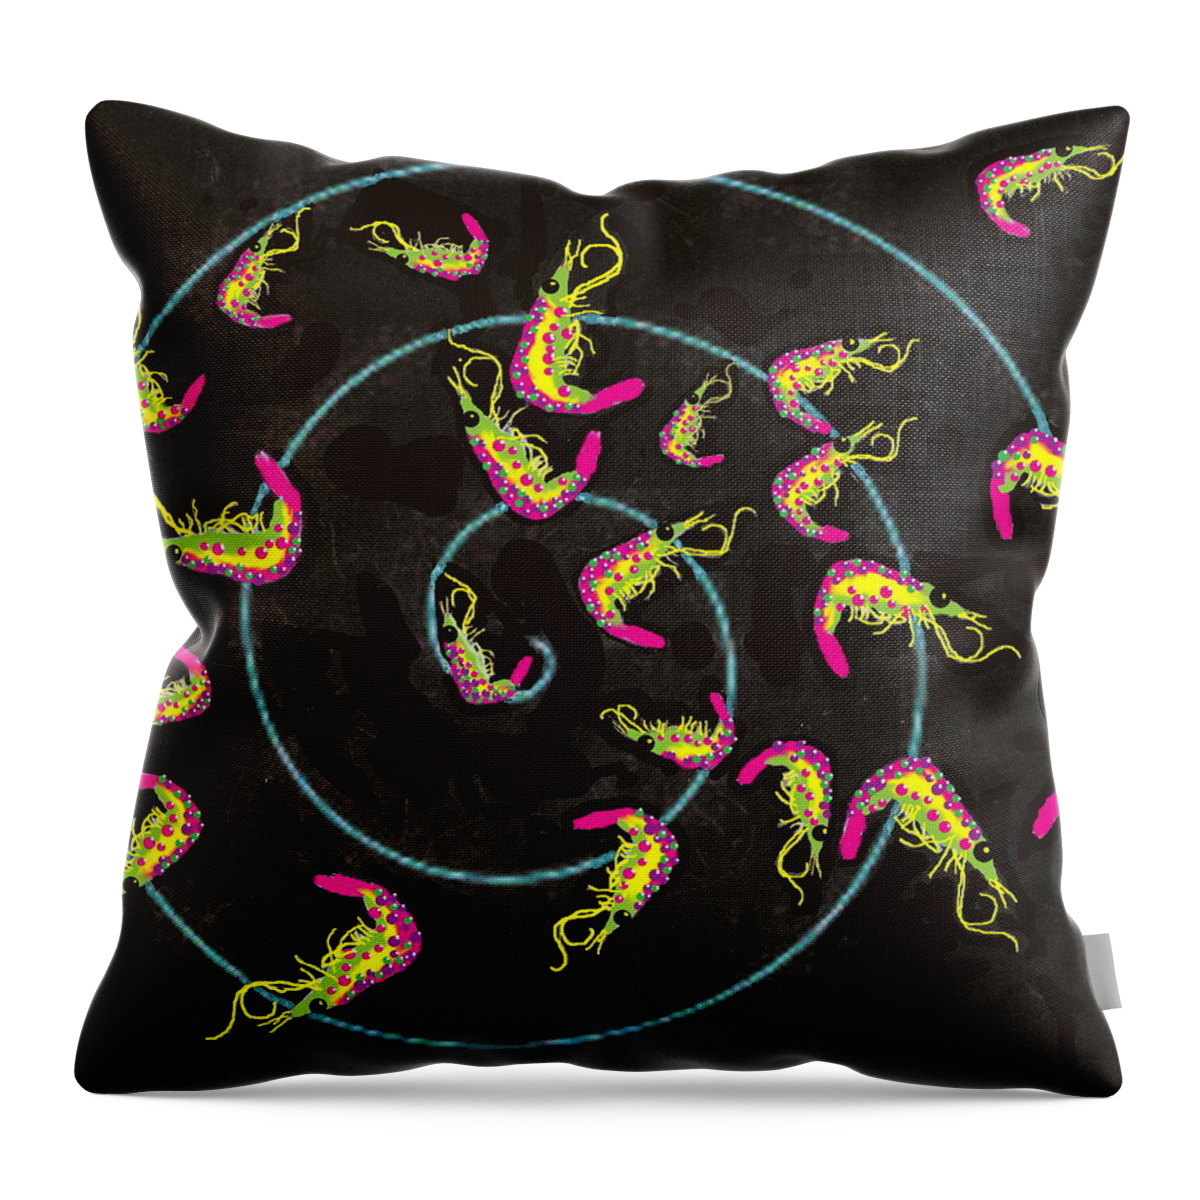  Throw Pillow featuring the digital art Shrimp Fractals Run Amuk #1 by R Allen Swezey